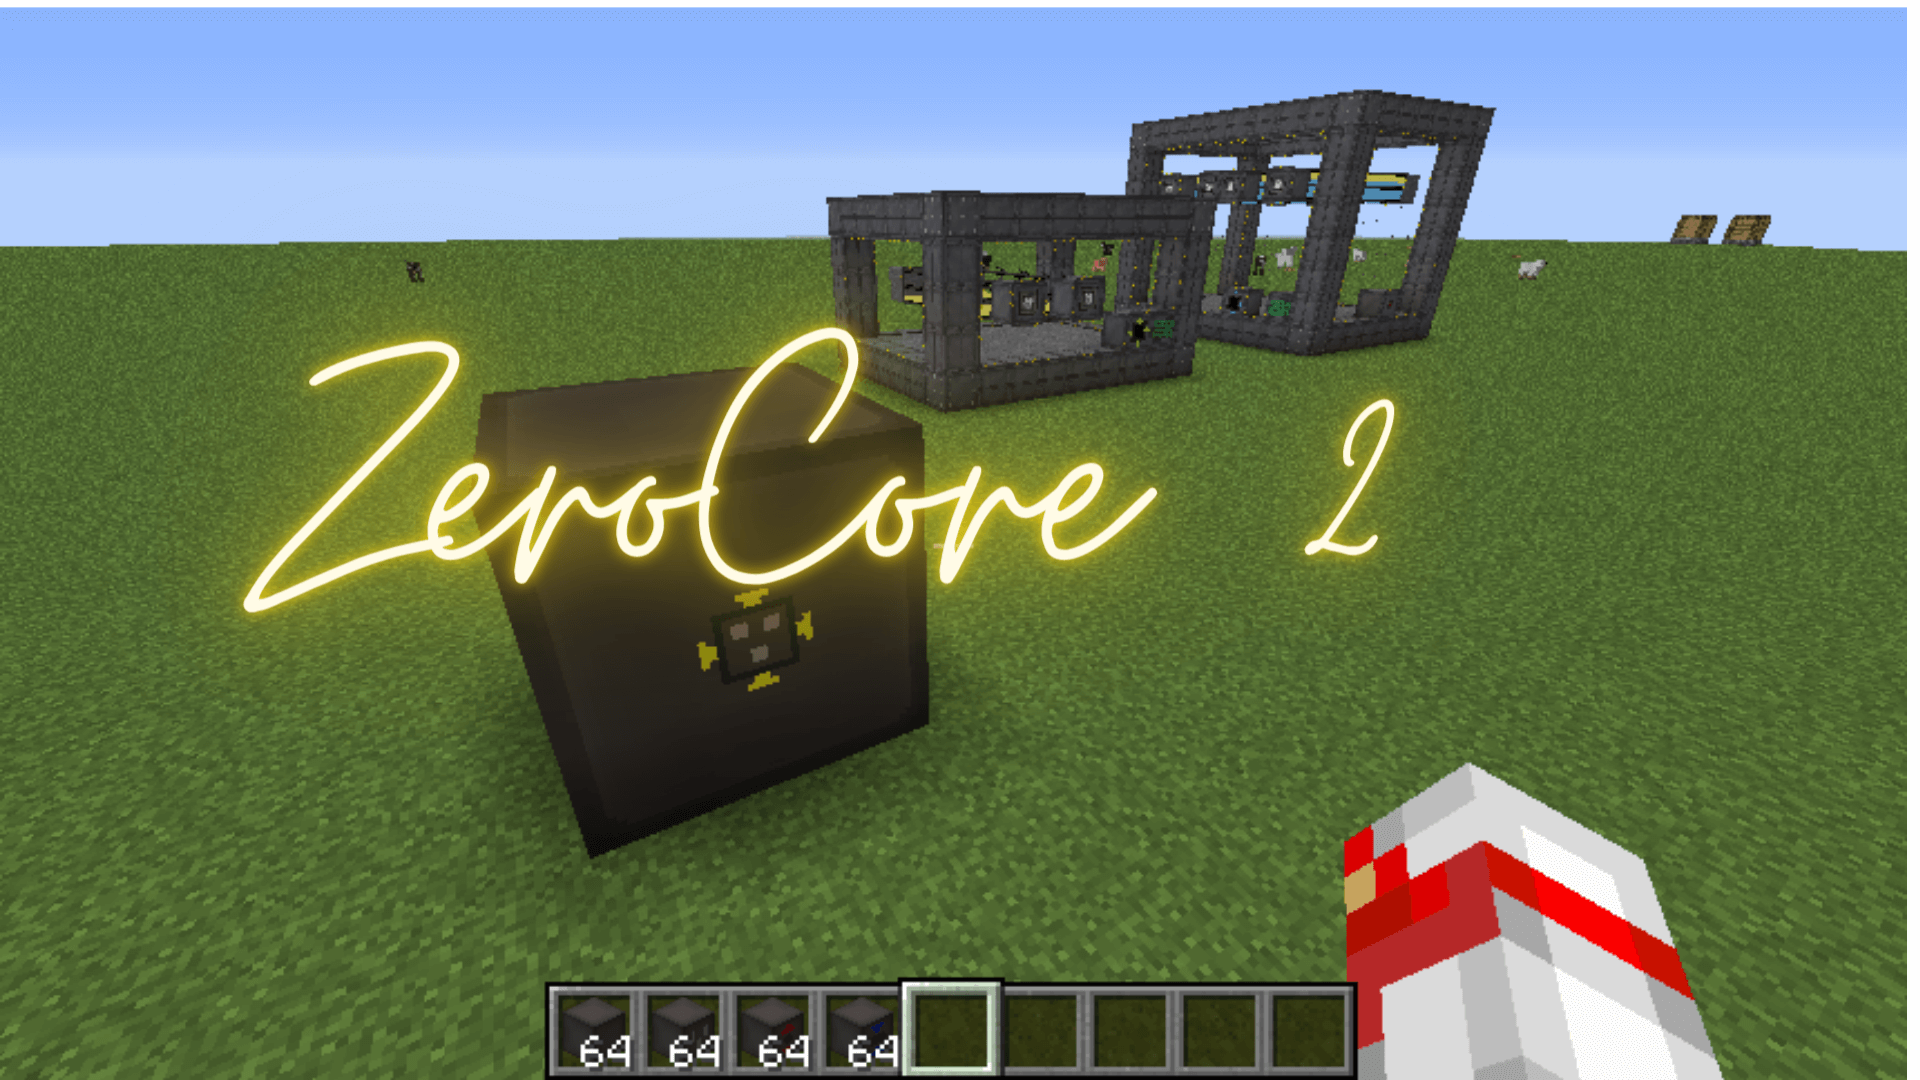 ZeroCore 2 Mod